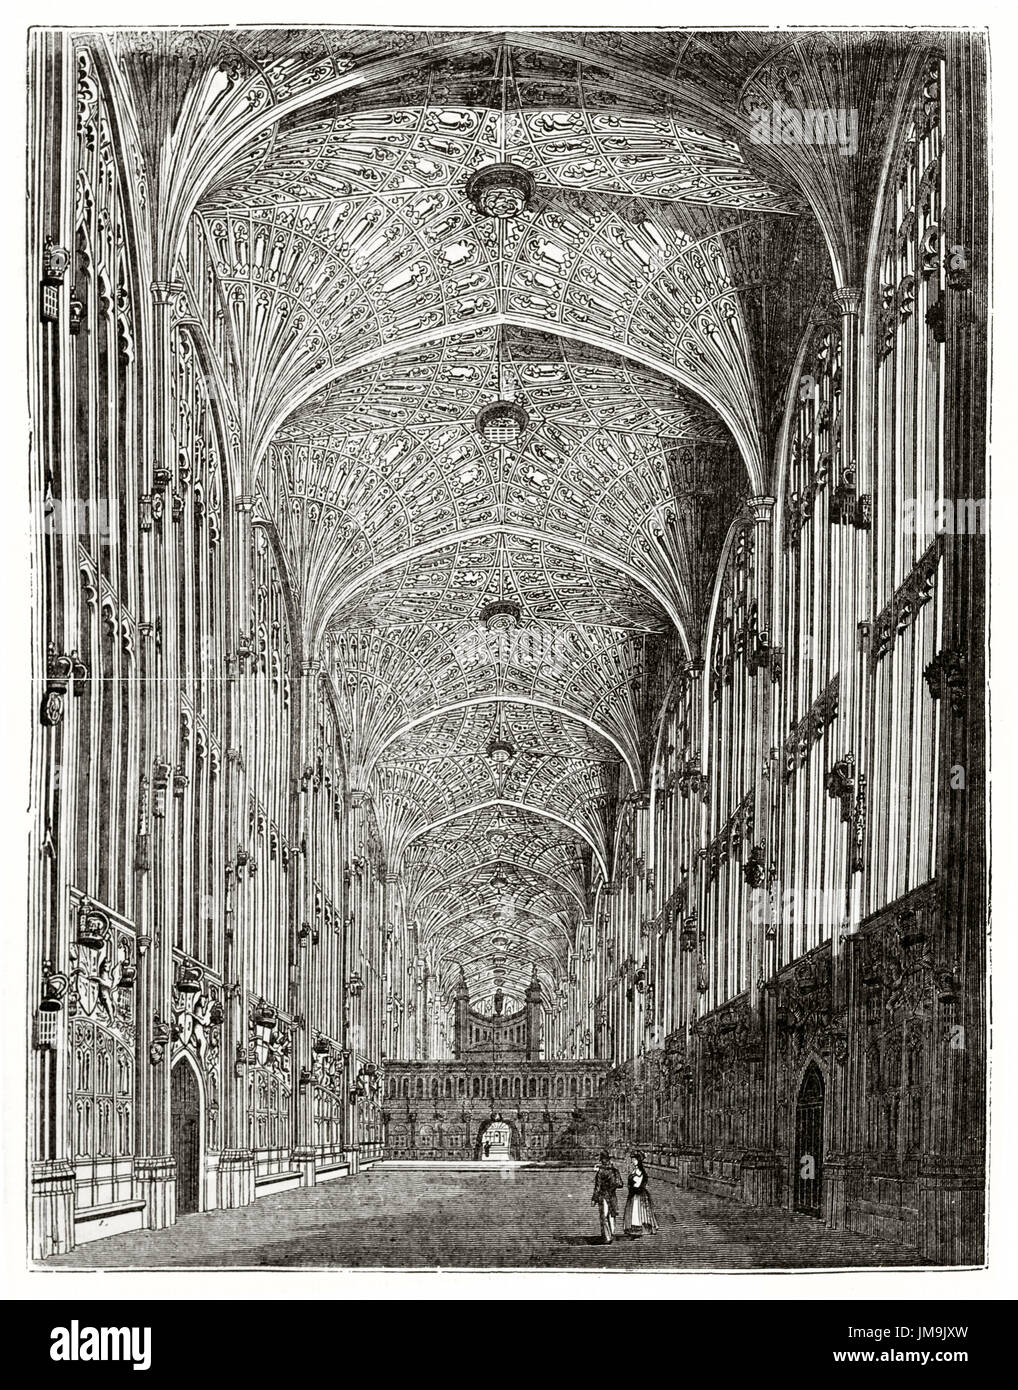 Alte Ansicht des Kings College Kapelle Interieur in Cambridge, Vereinigtes Königreich. Von unbekannter Autor veröffentlicht am Magasin Pittoresque, Paris, 1837. Stockfoto